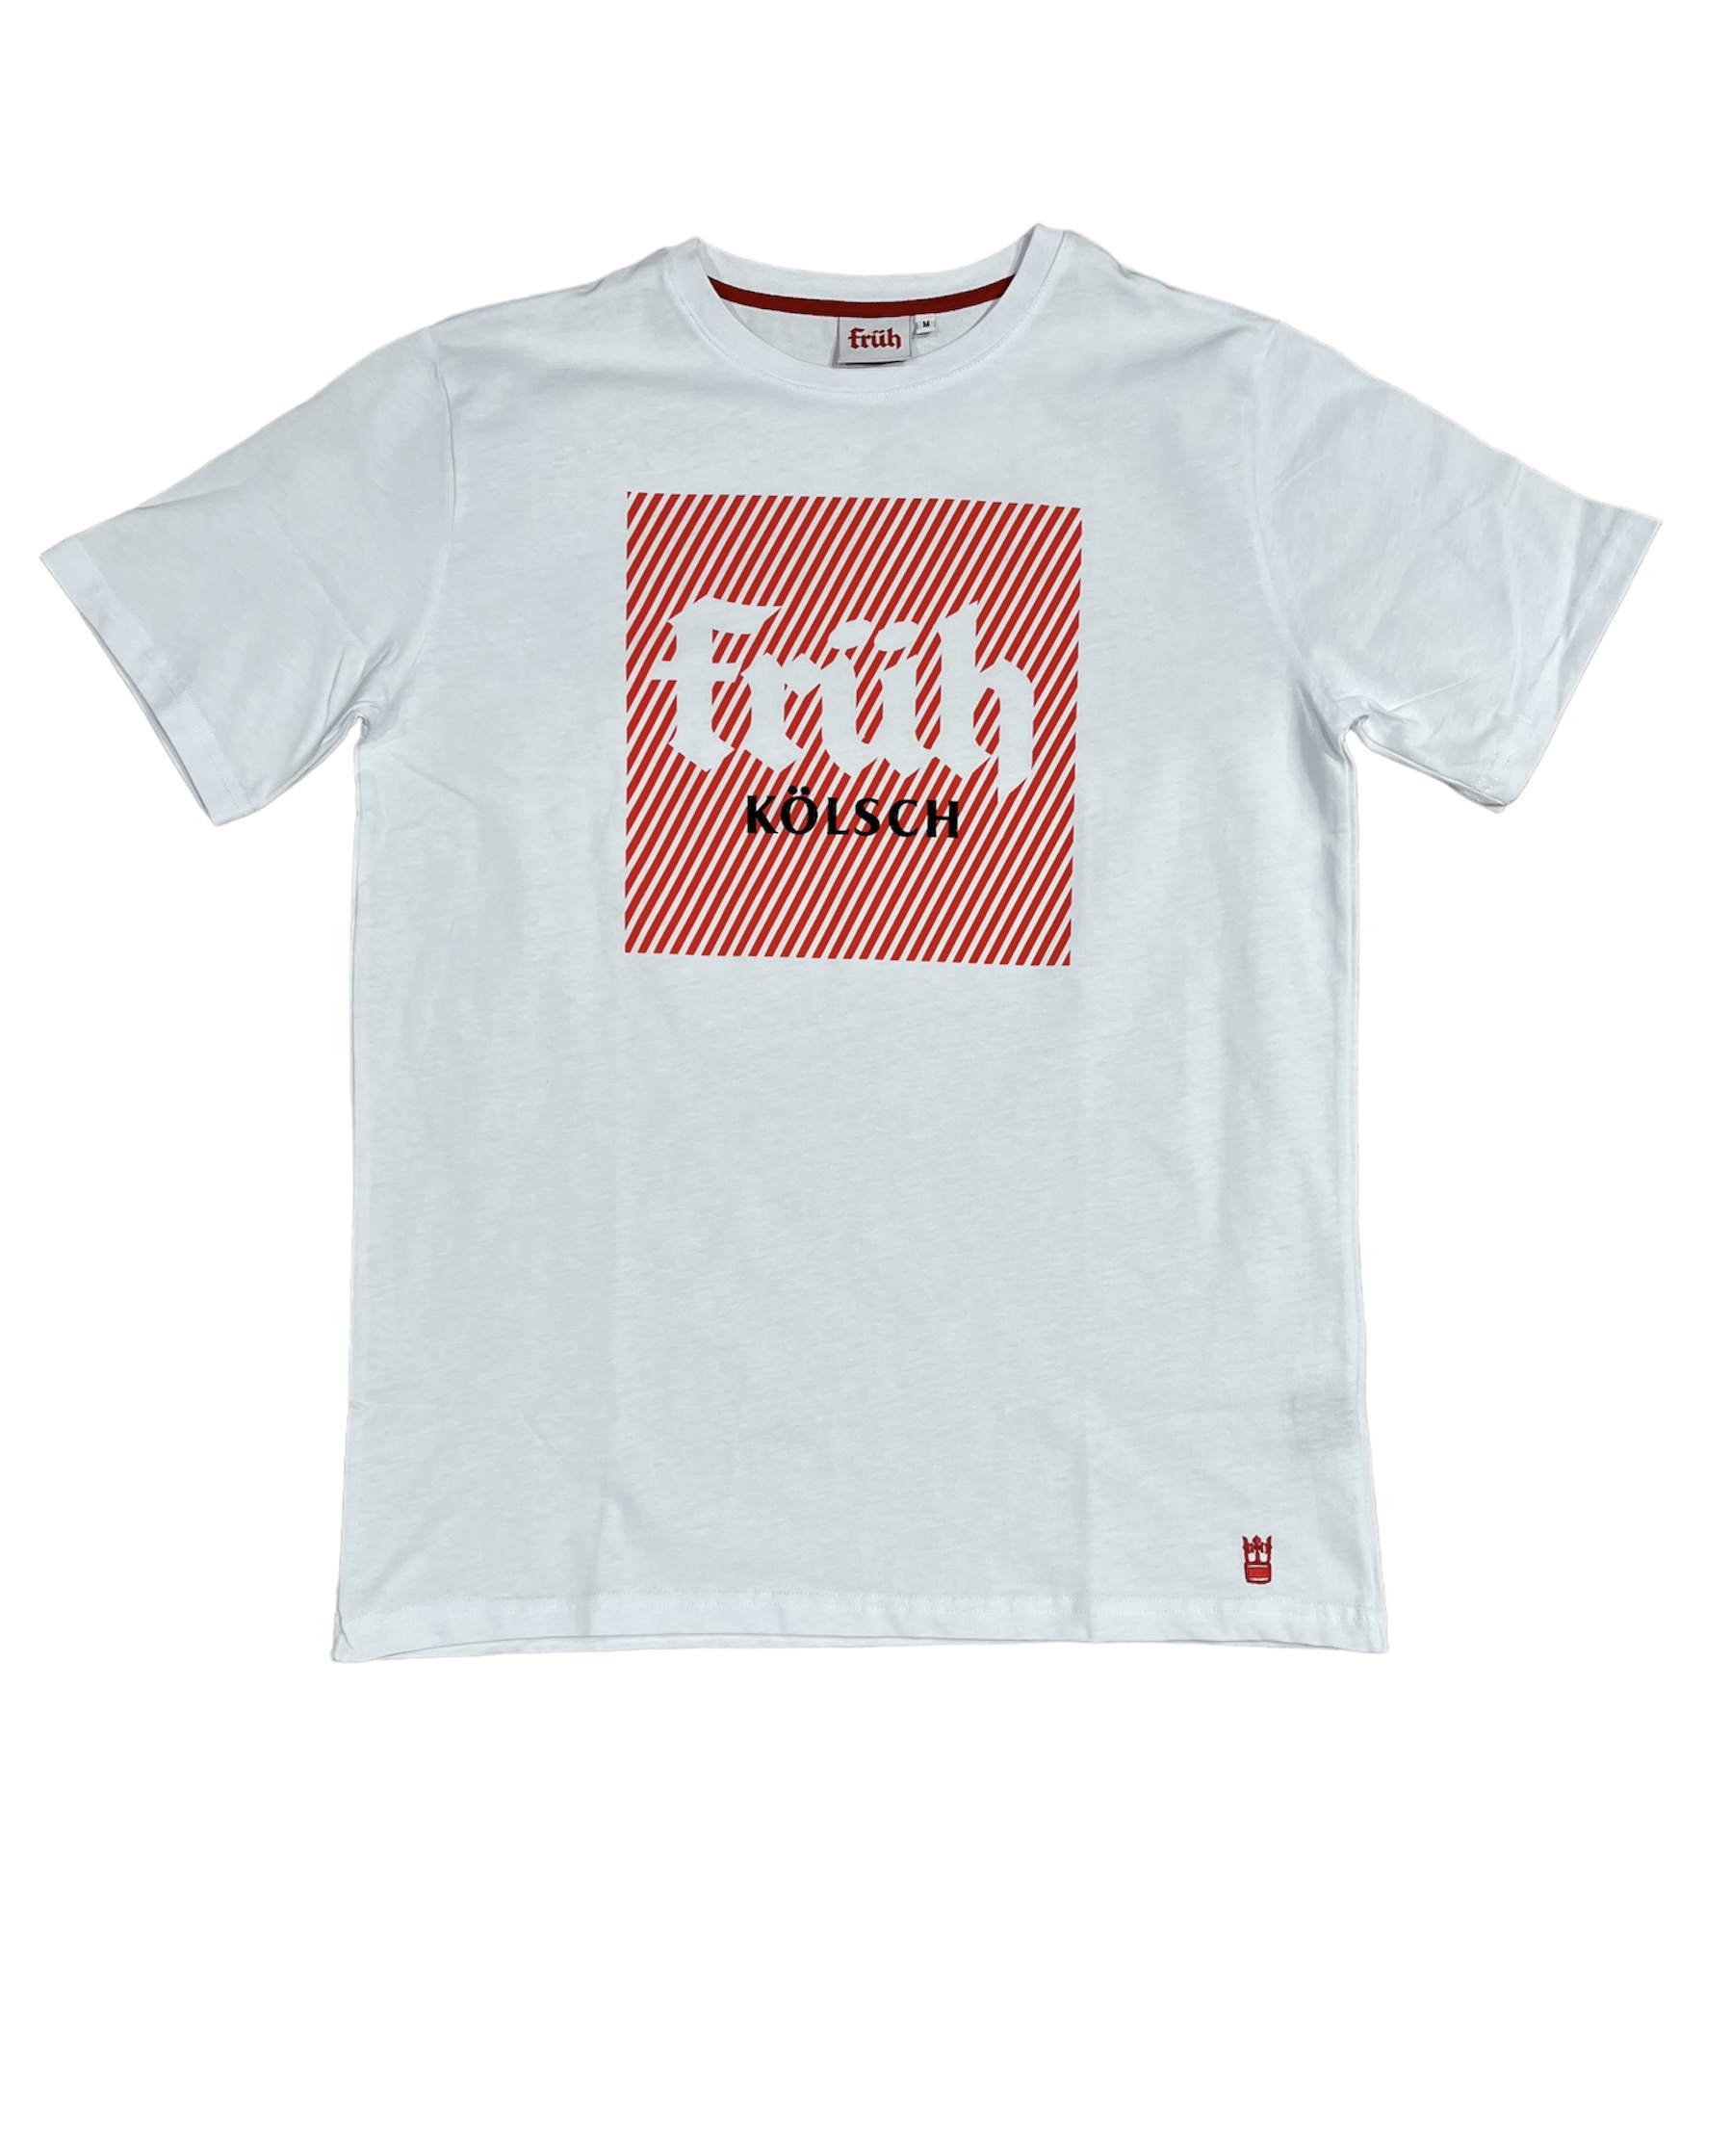 Früh Shirt weiss mit Früh Quadrat Logo XXXL